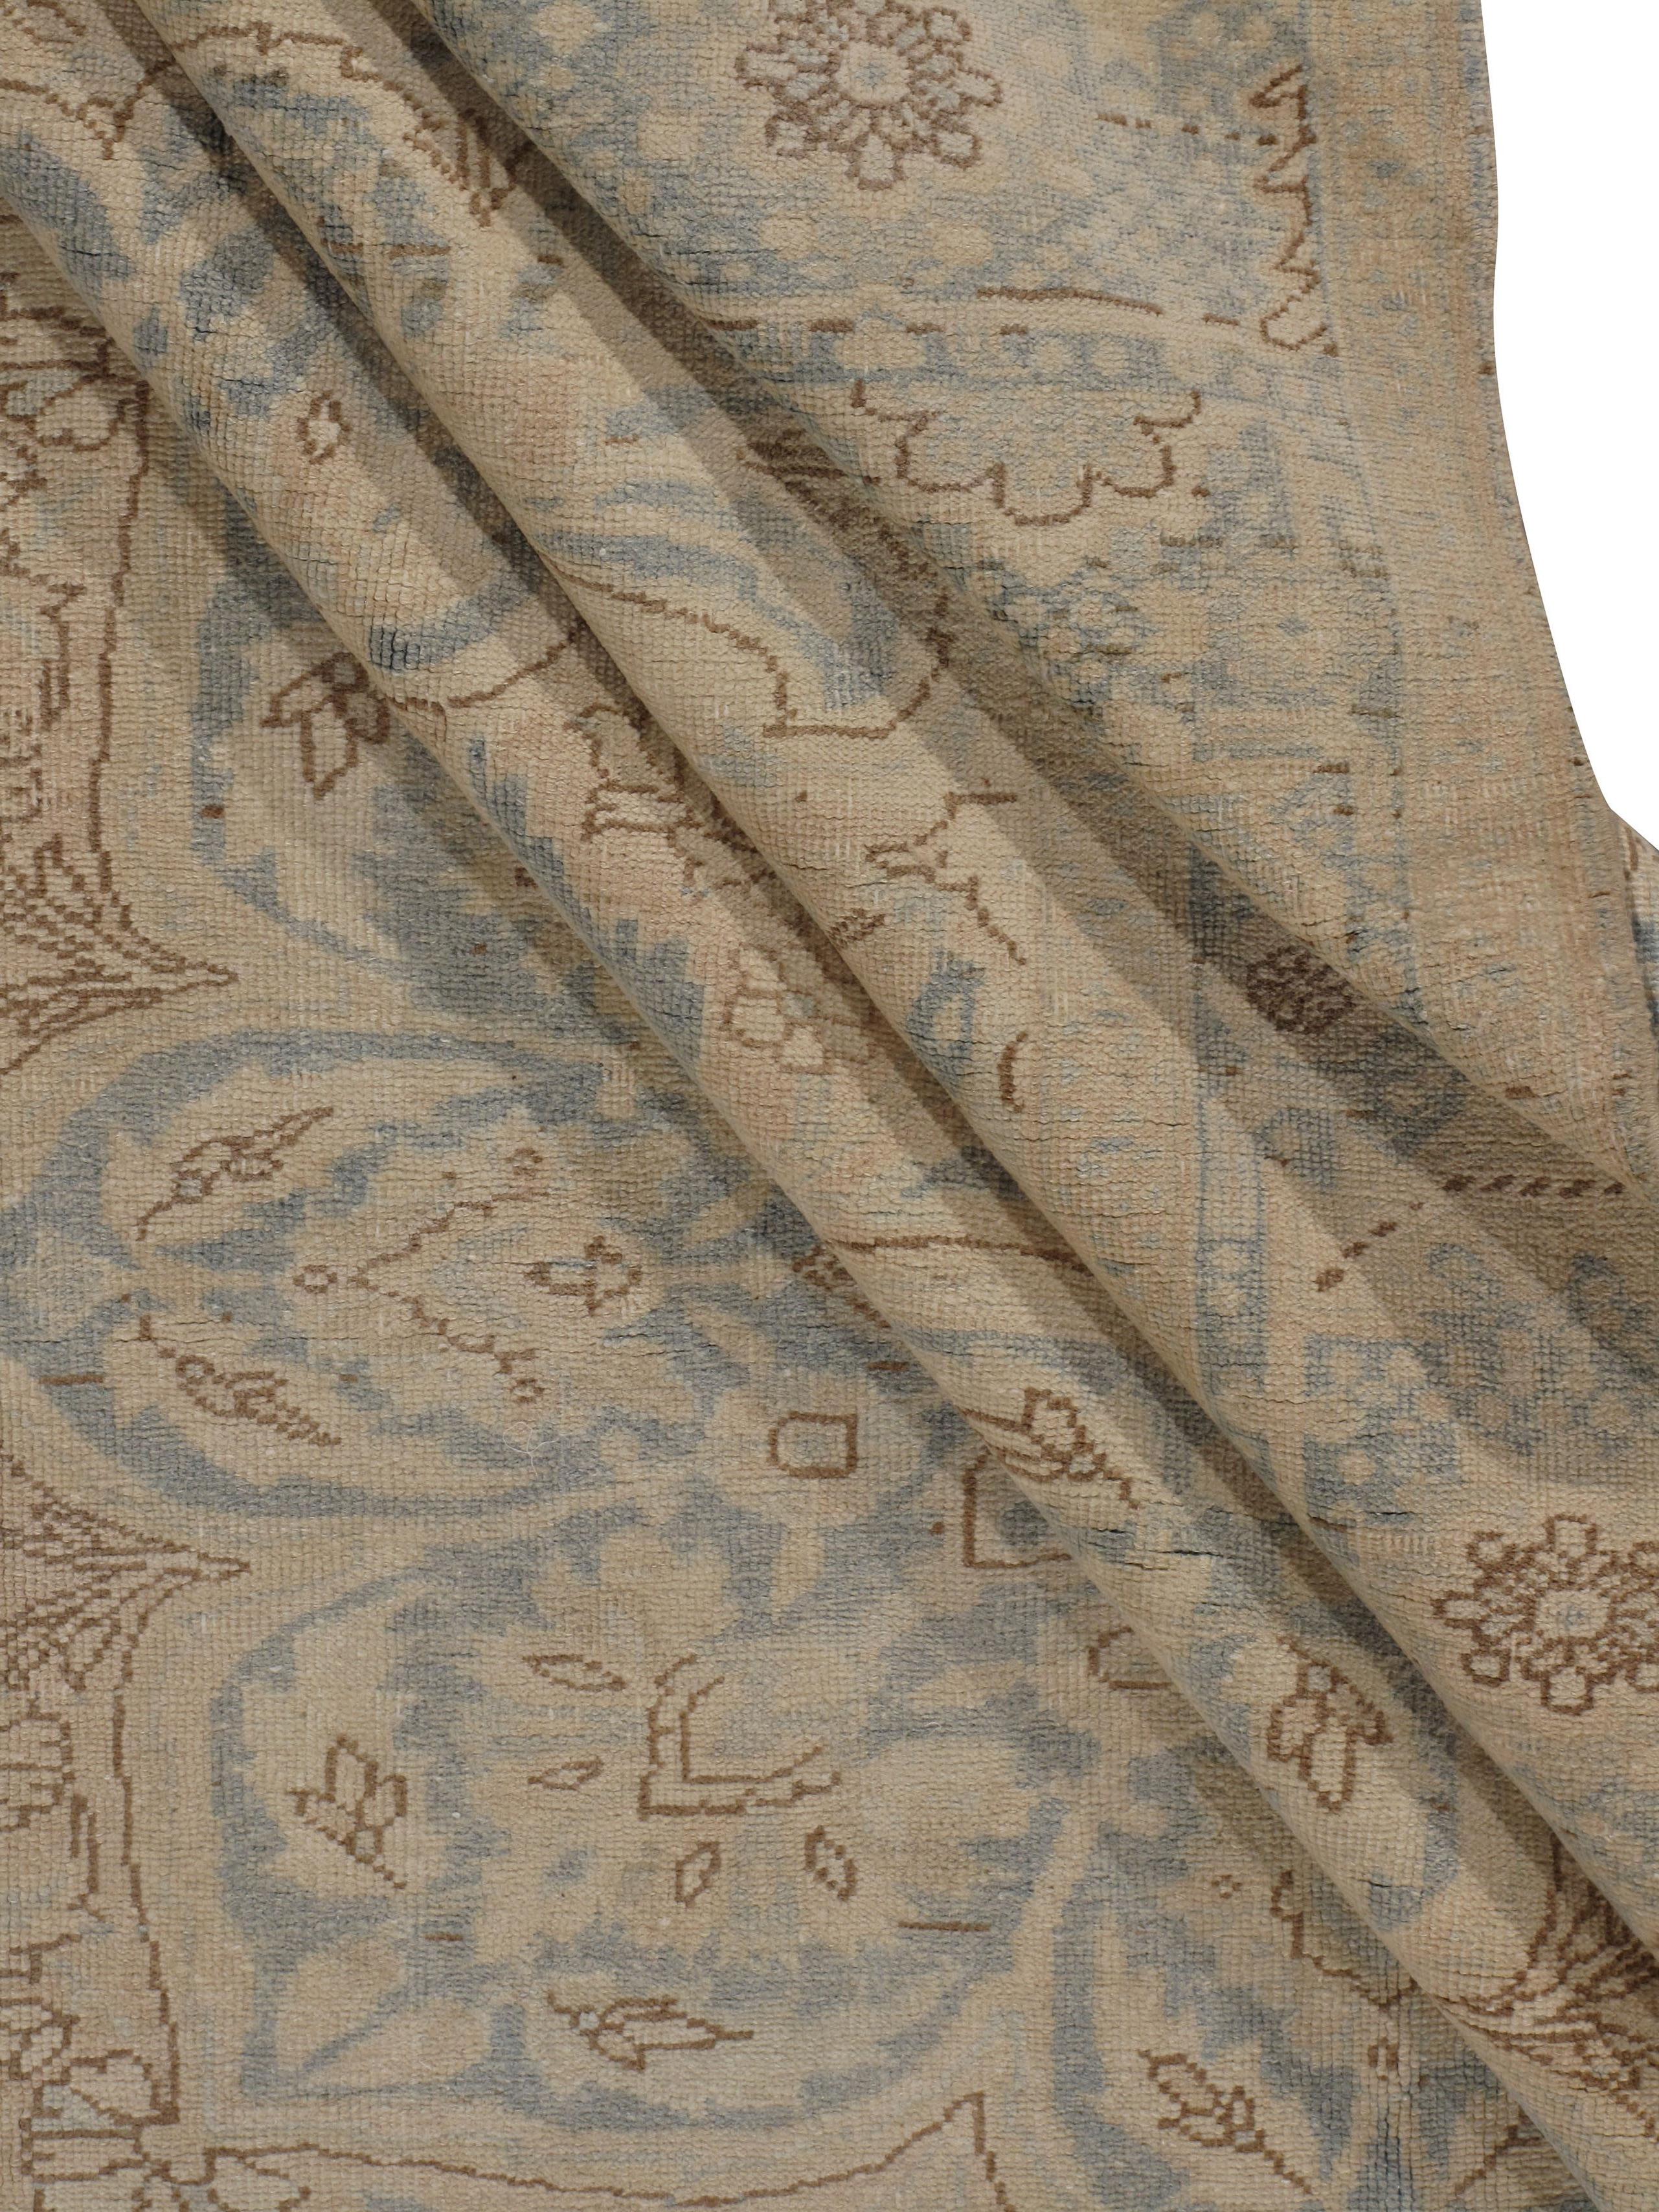 Tapis Persan Vintage Heriz, 8'1' x 11'5'. Les tapis traditionnels Heriz, qui sont aussi à la mode qu'à collectionner, sont habilement tissés dans des couleurs vives et des motifs géométriques prononcés. Le district de Heriz, dans le nord-ouest de la